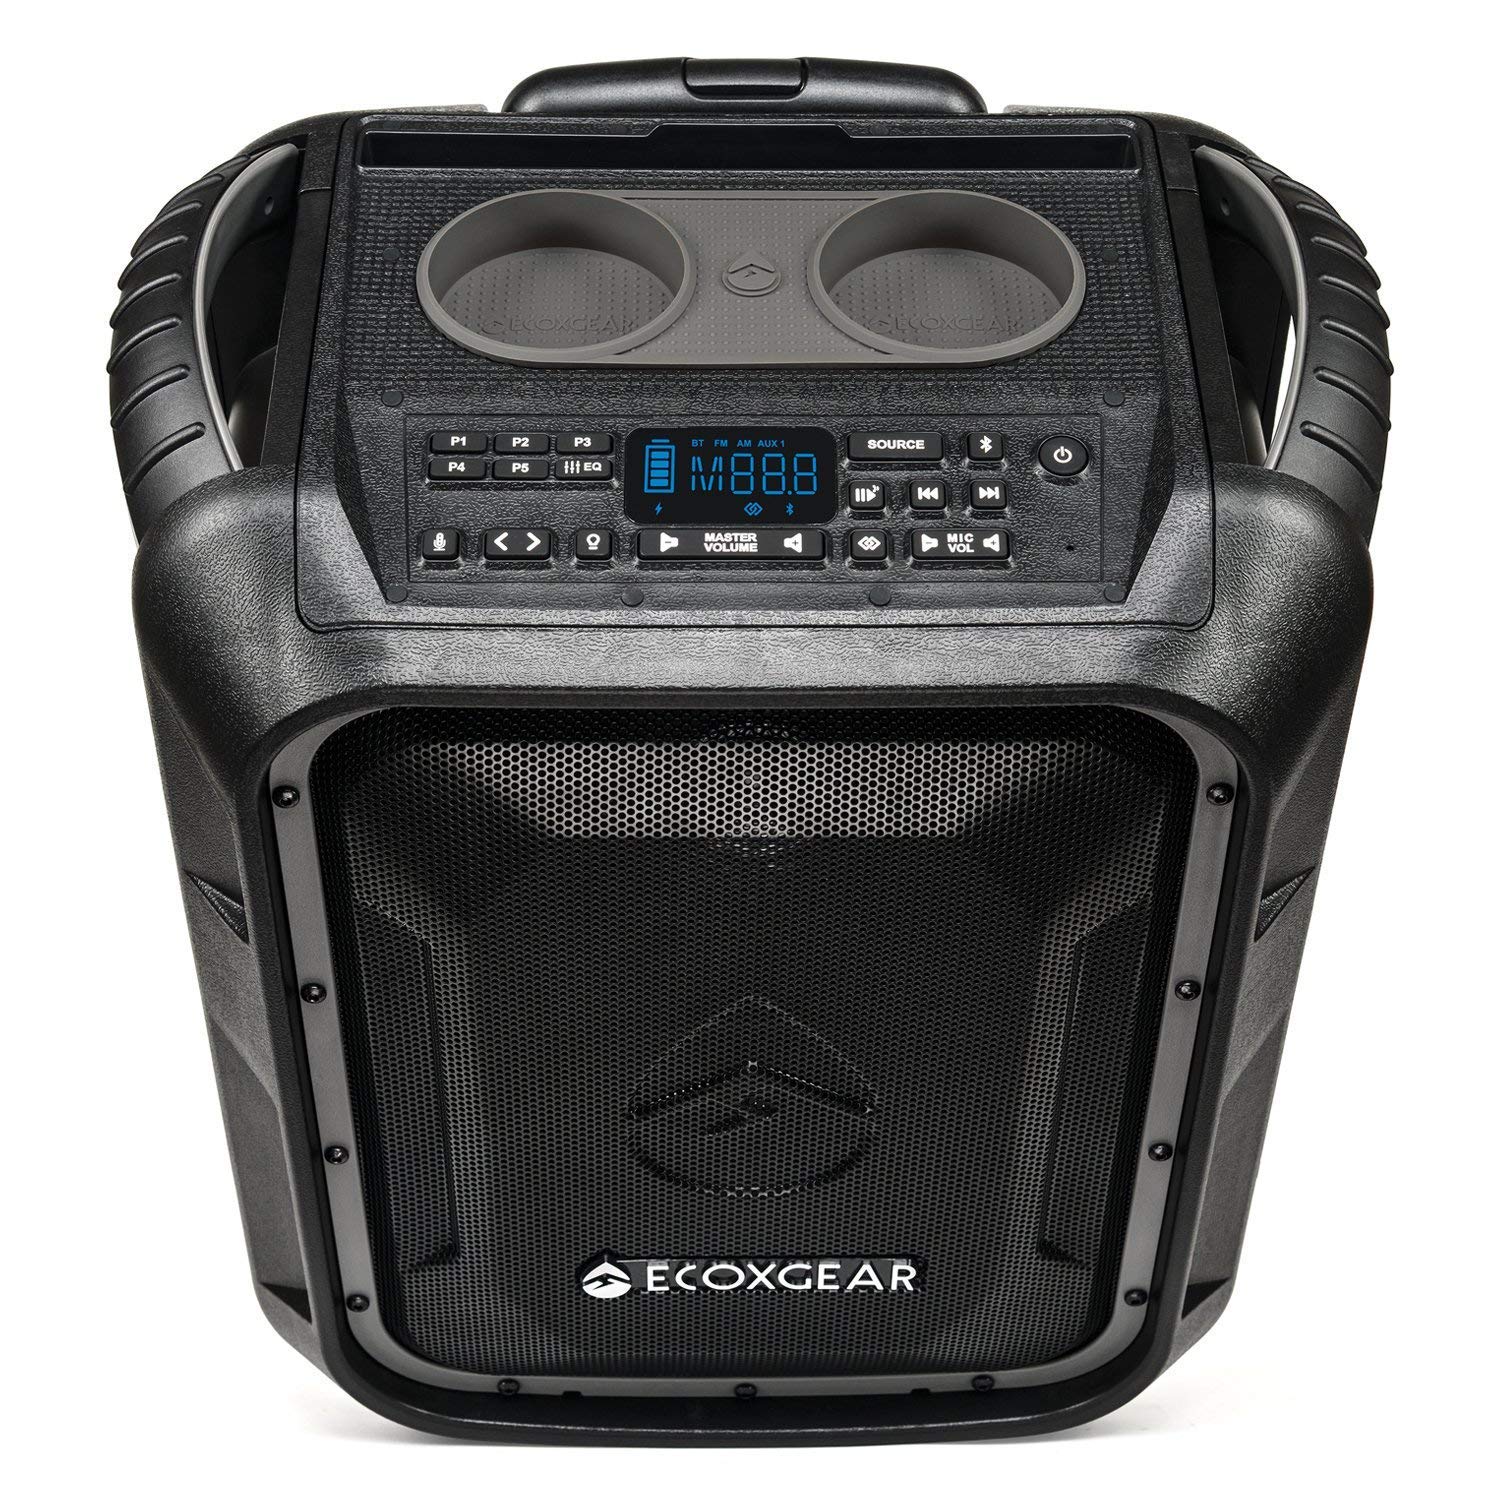 ECOXGEAR EcoBoulder+ GDI-EXBLD810 頑丈な防水フローティングポータブル Bluetooth ワイヤレス 100 ワット スピーカーおよび PA システム (グレー)